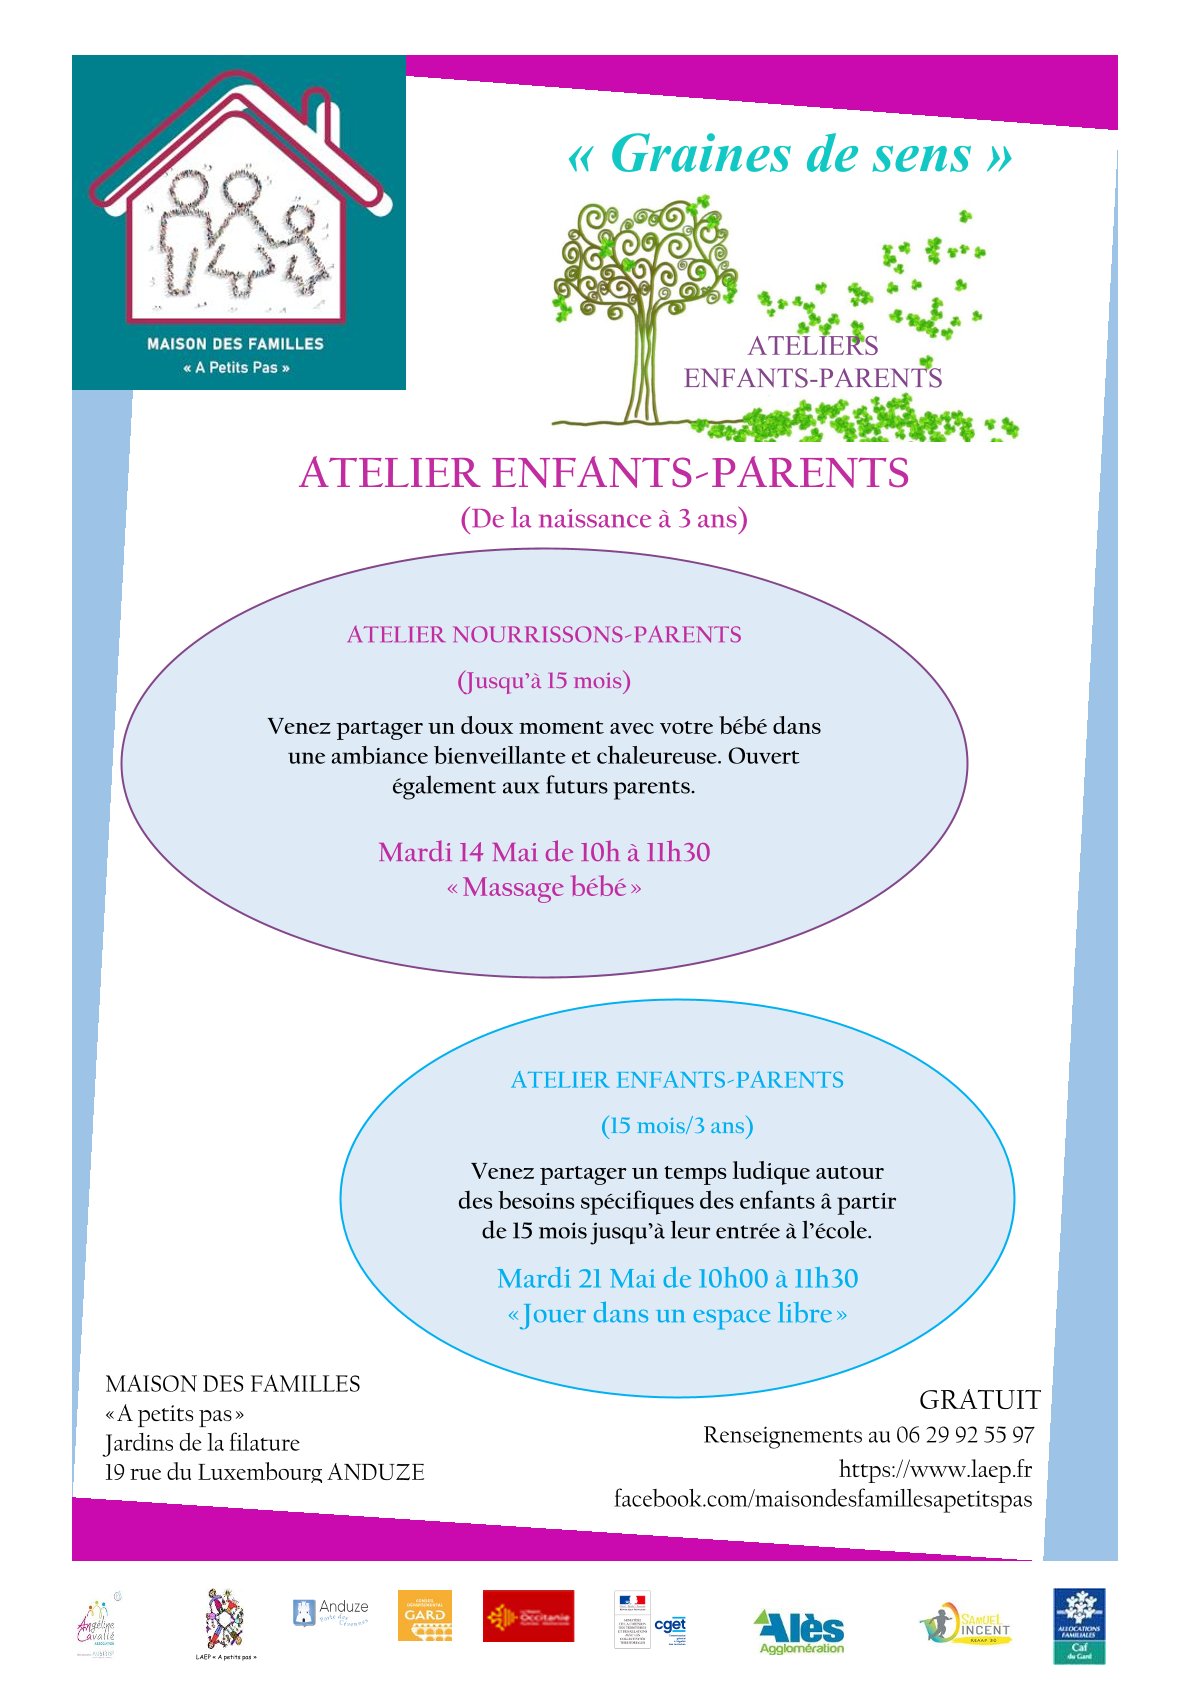 Atelier Nourrissons/Parents  (0-15 mois) "Massage bébé"